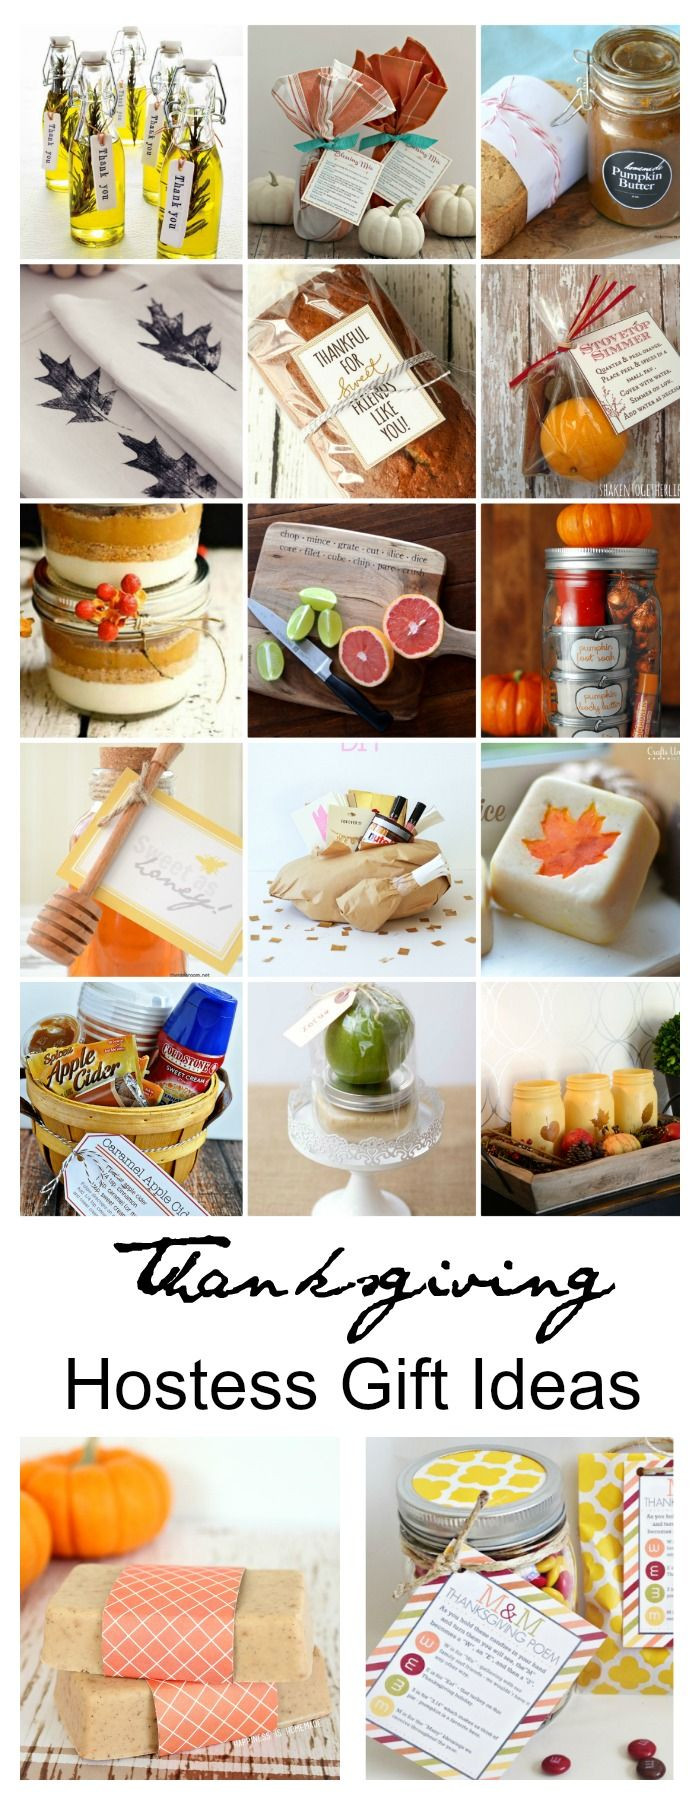 Thanksgiving Hostess Gift Ideas Homemade
 Best 25 Thanksgiving hostess ts ideas on Pinterest